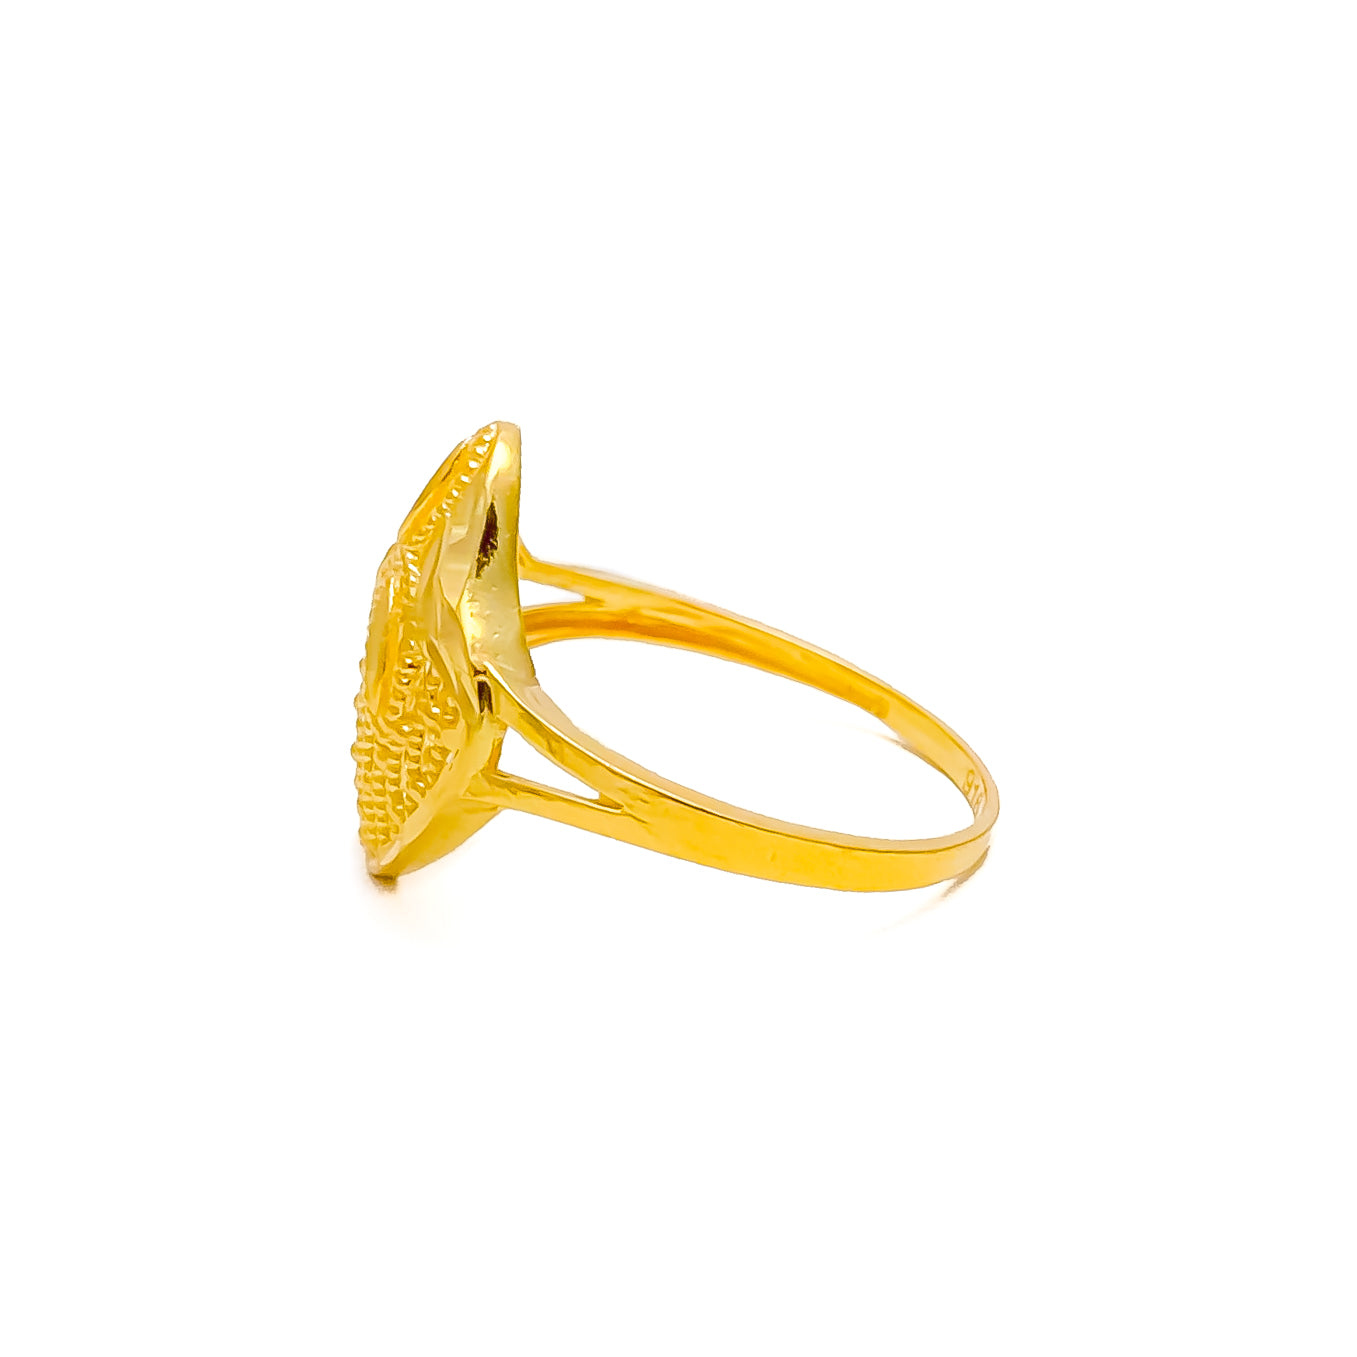 22K Gold Vanki Ring with Color Stones - 235-GVR422 in 4.700 Grams